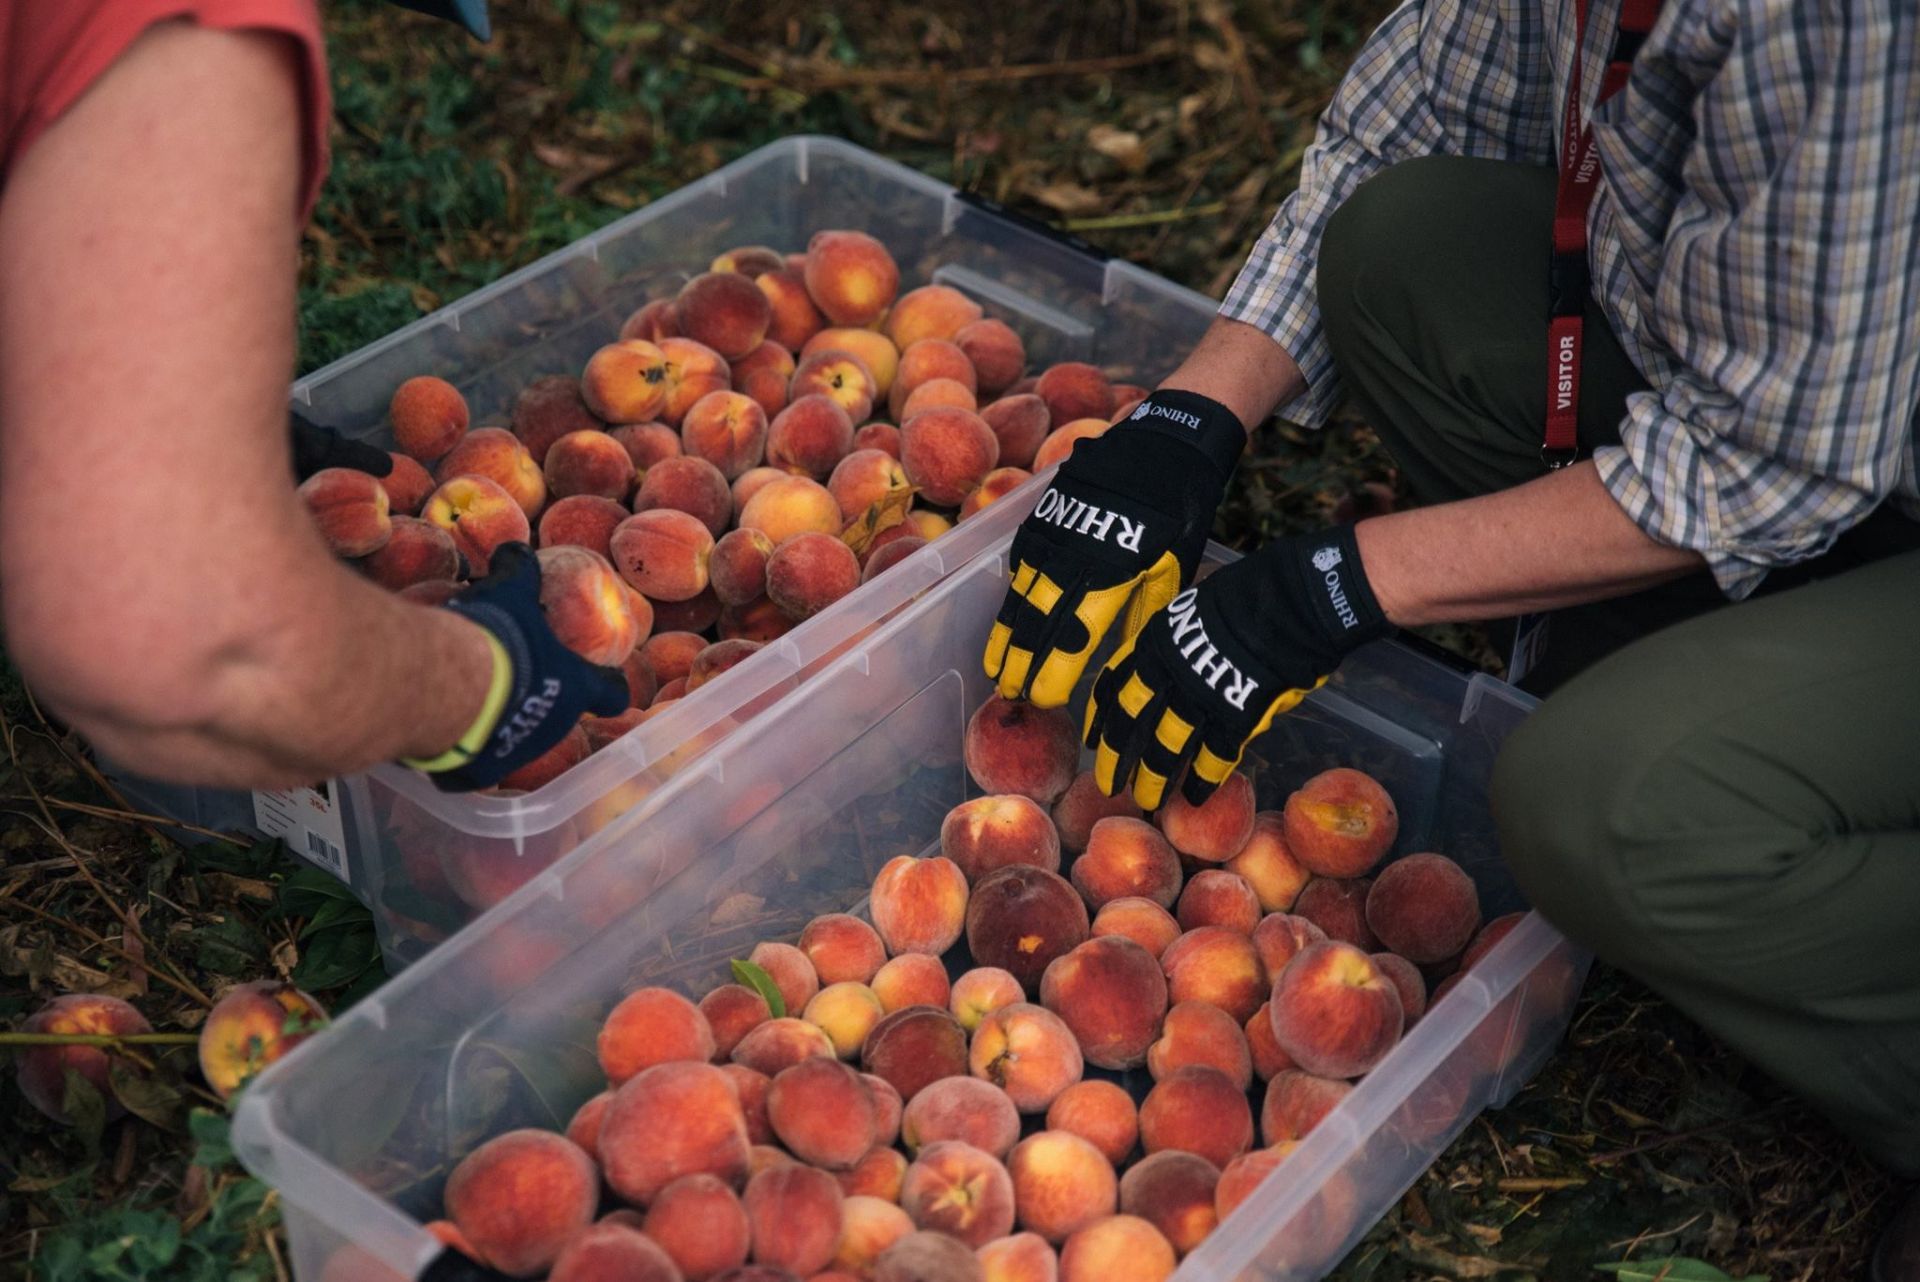 Campbelltown Fruit Crew harvesting peaches